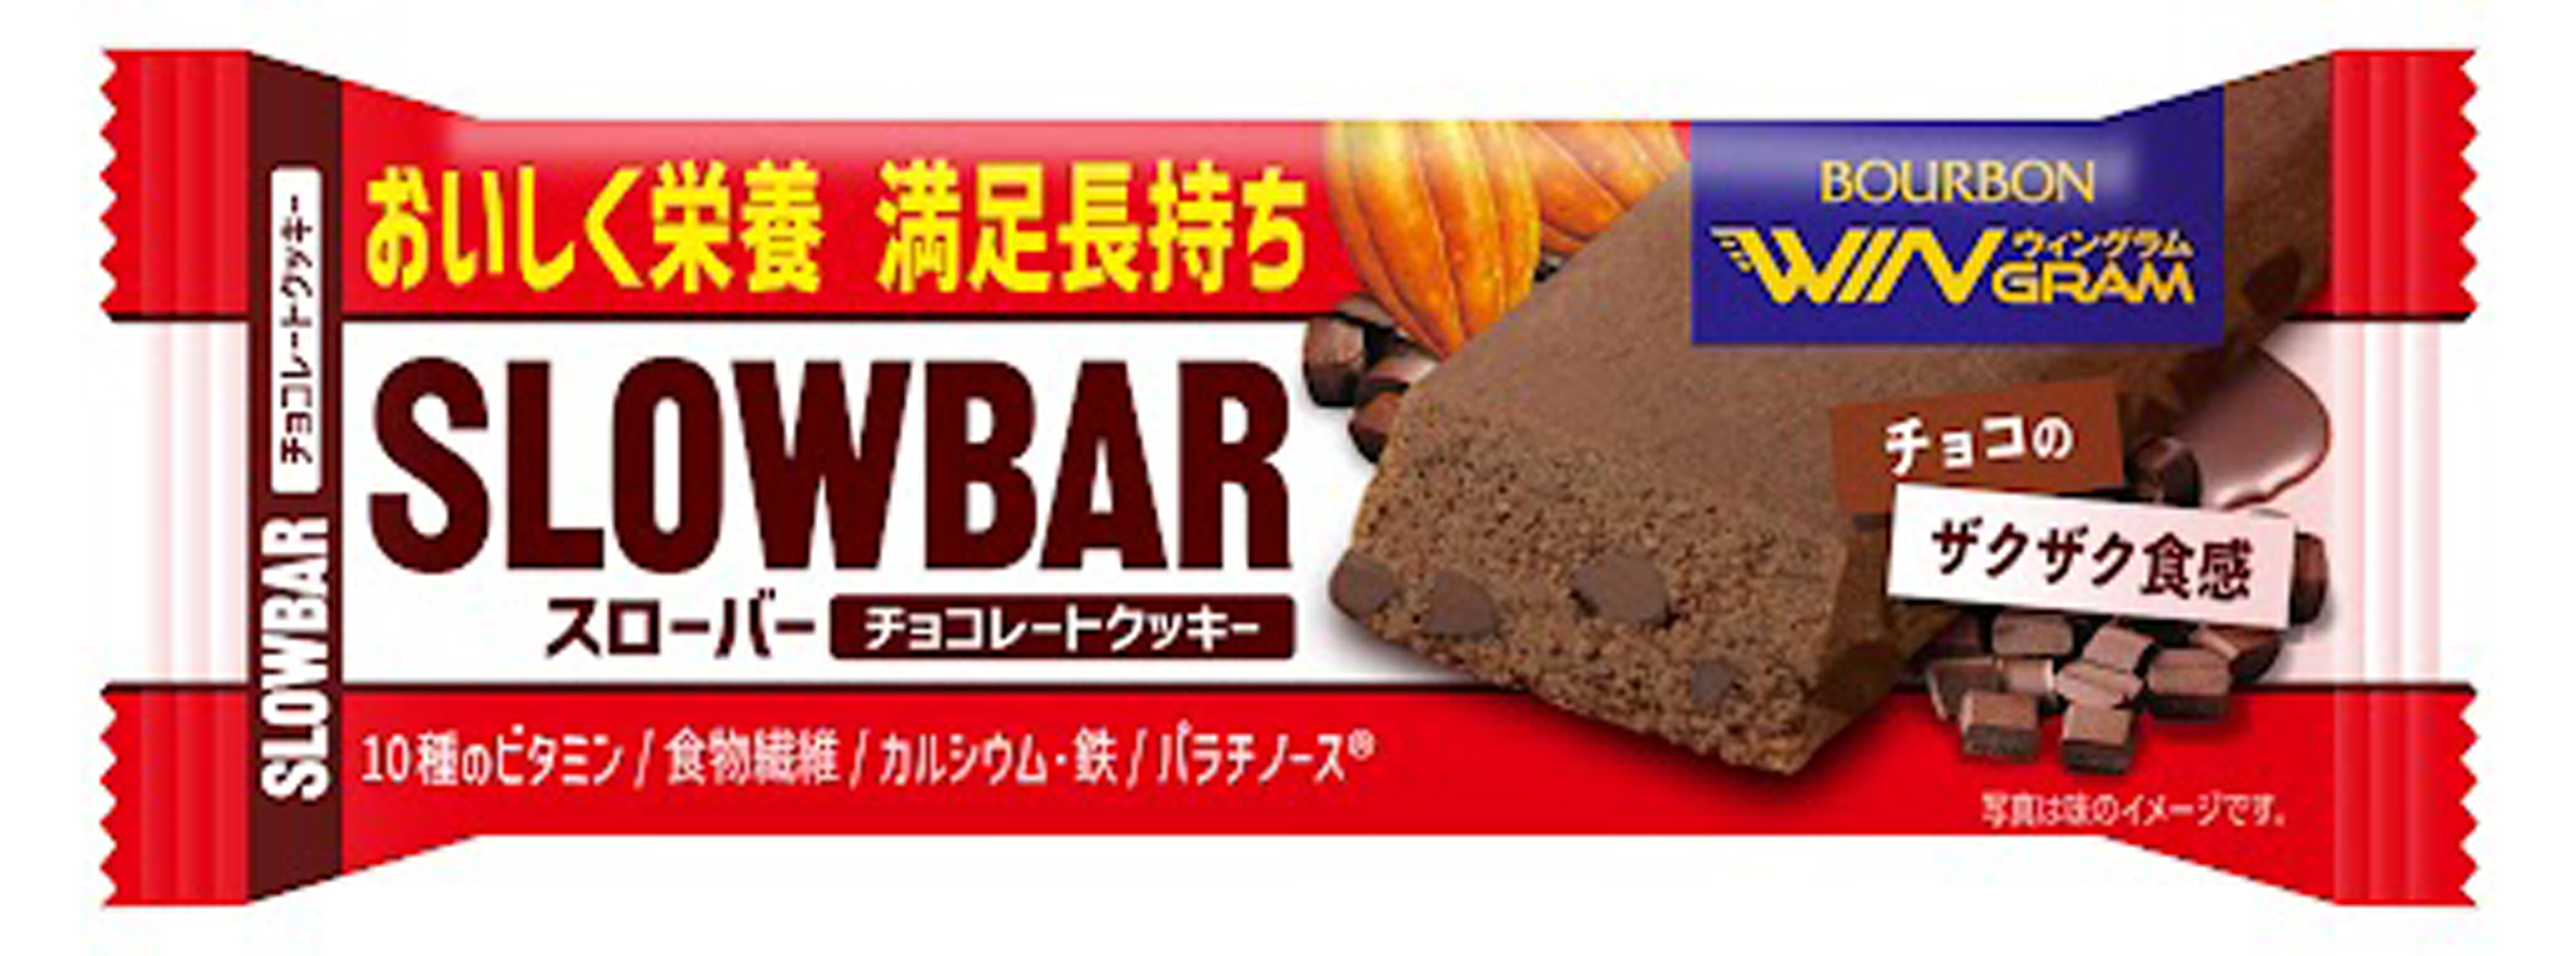 ブルボン スローバーチョコレートクッキー 41g ×2ケース(216本)